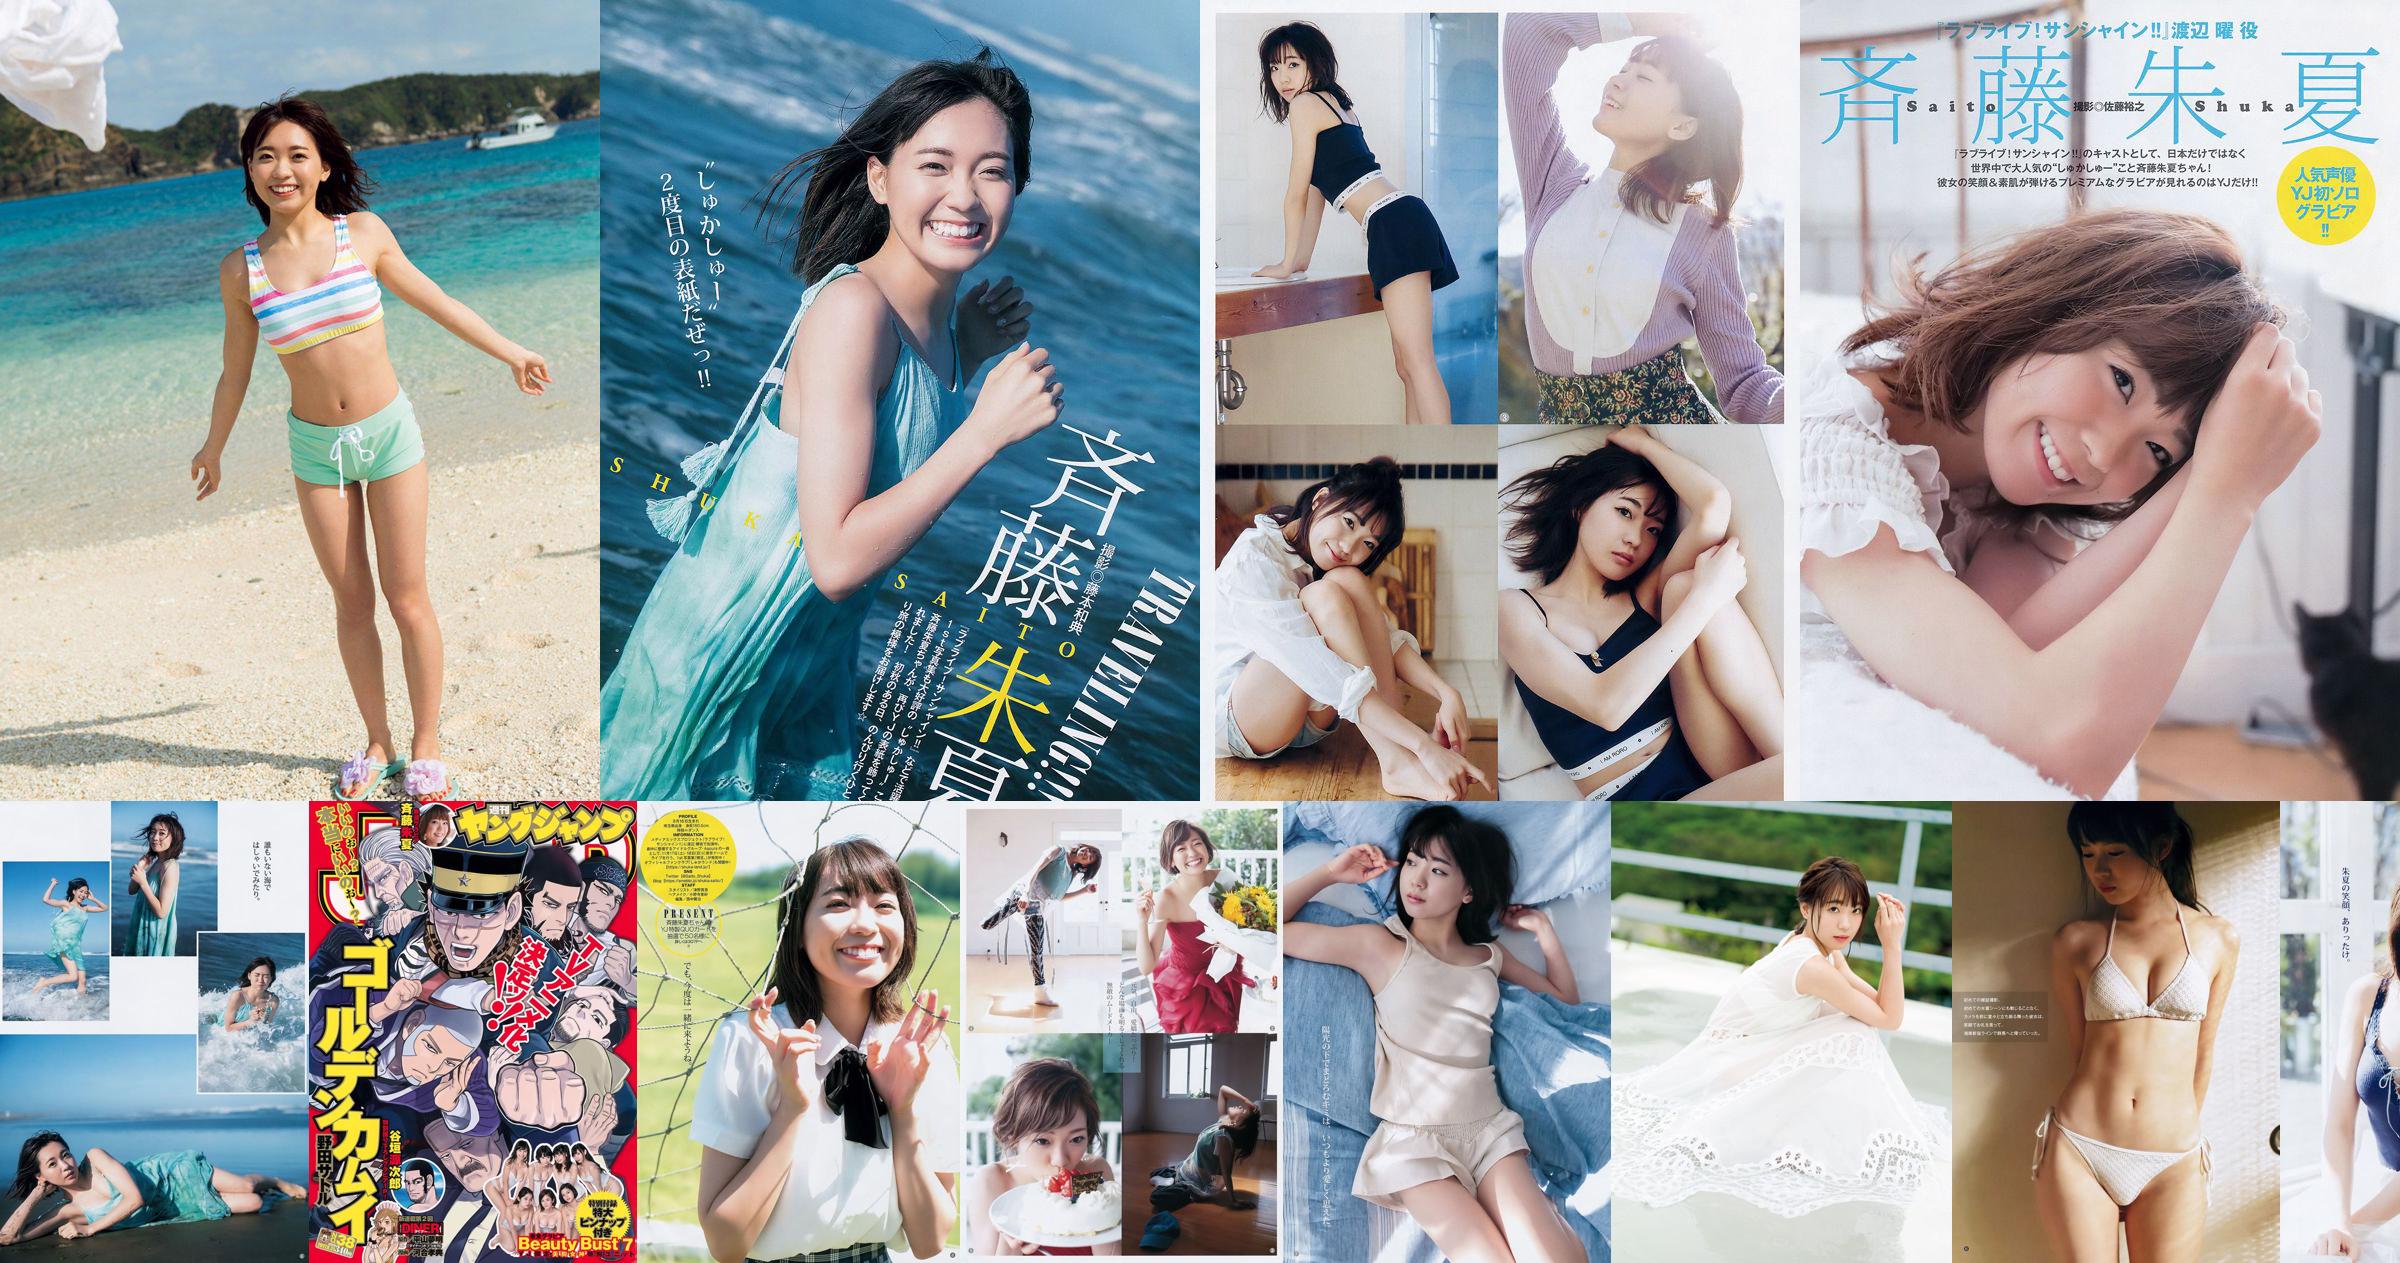 Shuka Saito Beauty Bust 7 [Weekly Young Jump] 2017 No.38 Foto No.859acb Pagina 7